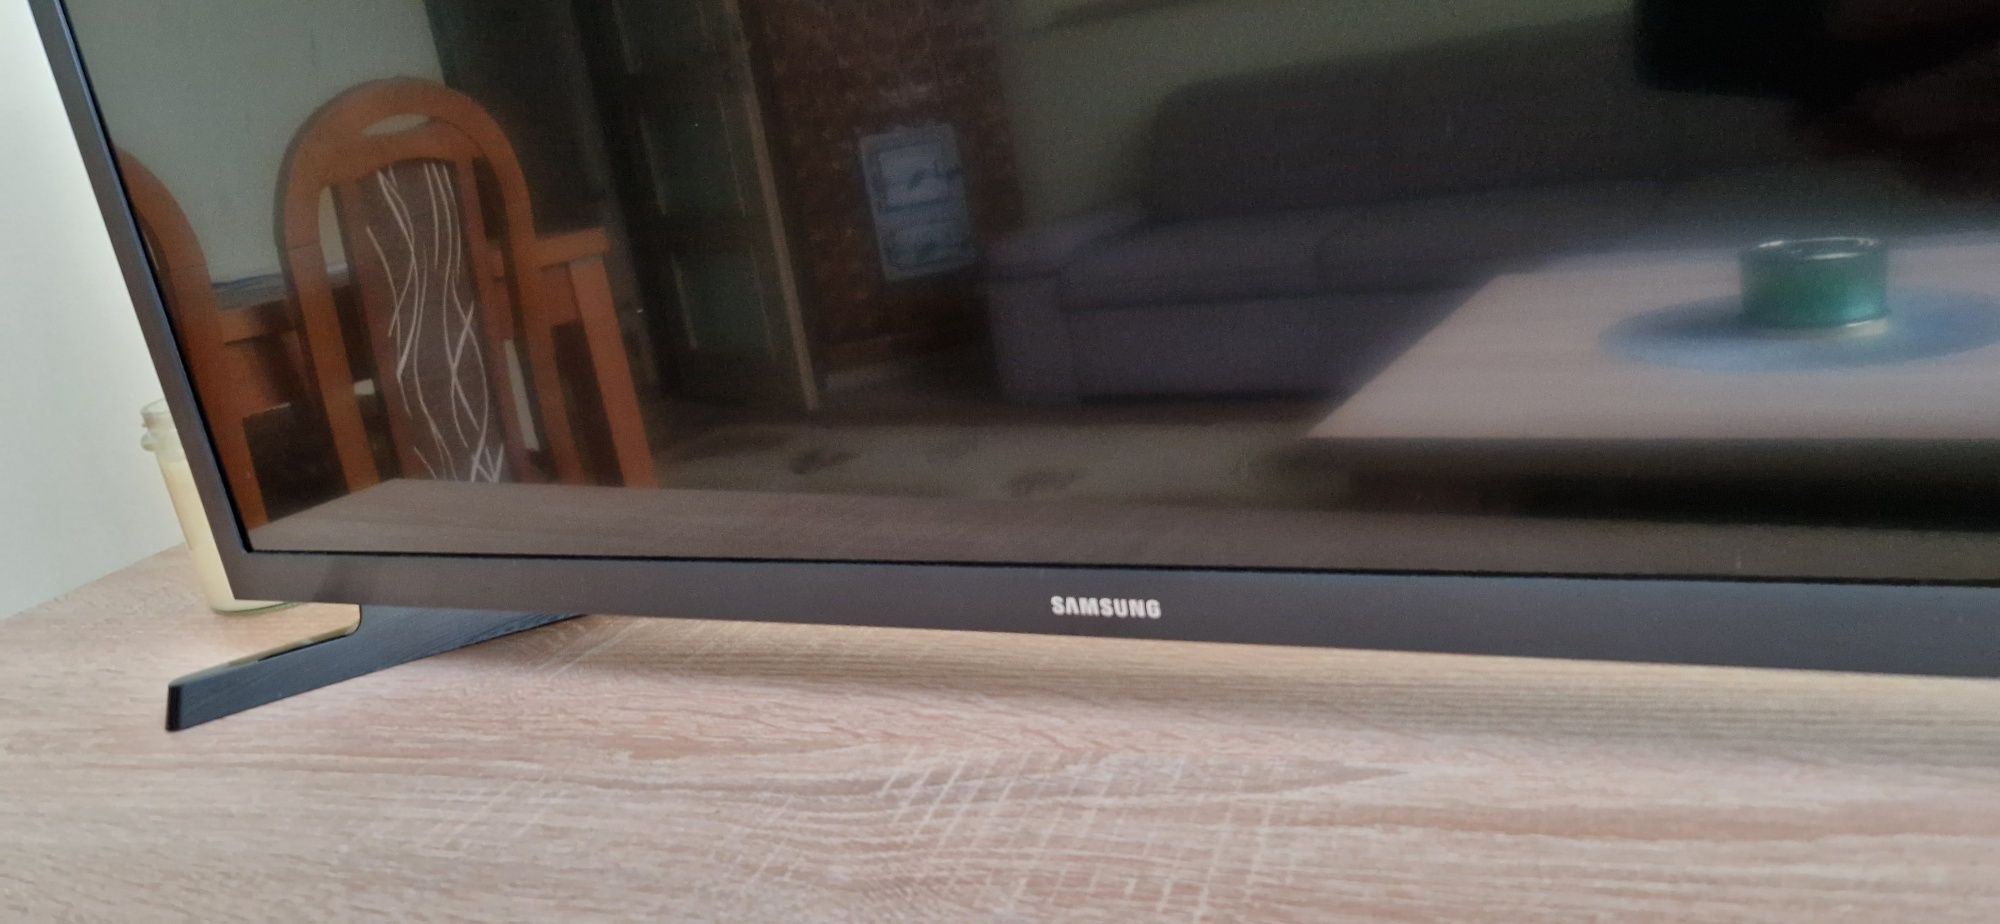 Telewizor Samsung 32" nowy, gwarancja, okazja